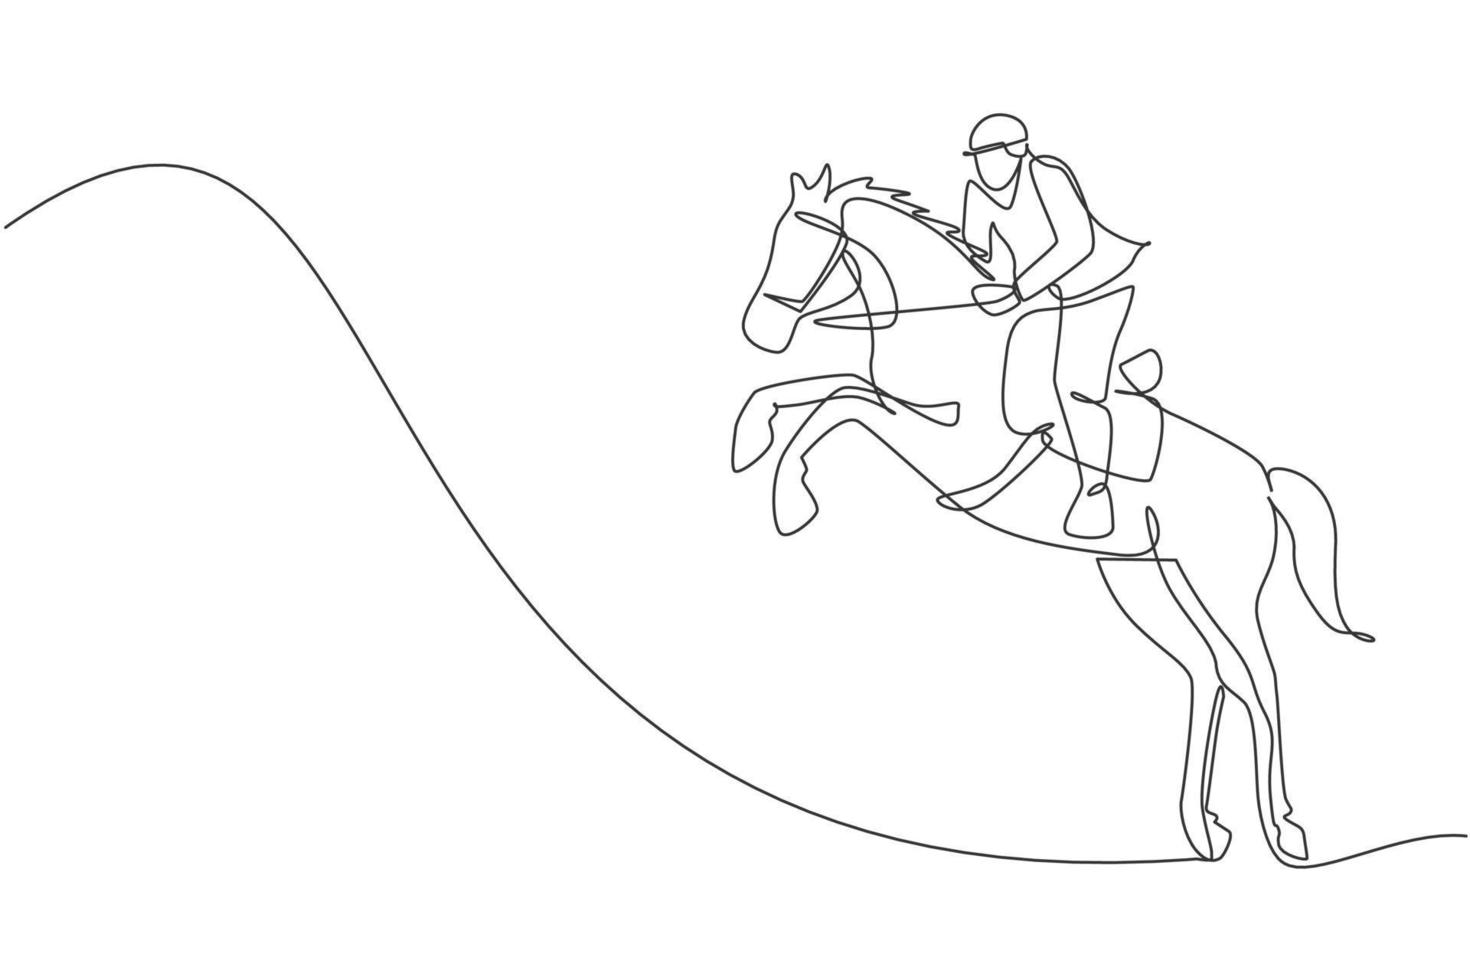 une ligne continue dessinant un jeune cavalier en action de saut. entraînement équin sur piste de course. concept de compétition de sport équestre. graphique d'illustration vectorielle de conception de dessin à une seule ligne dynamique vecteur